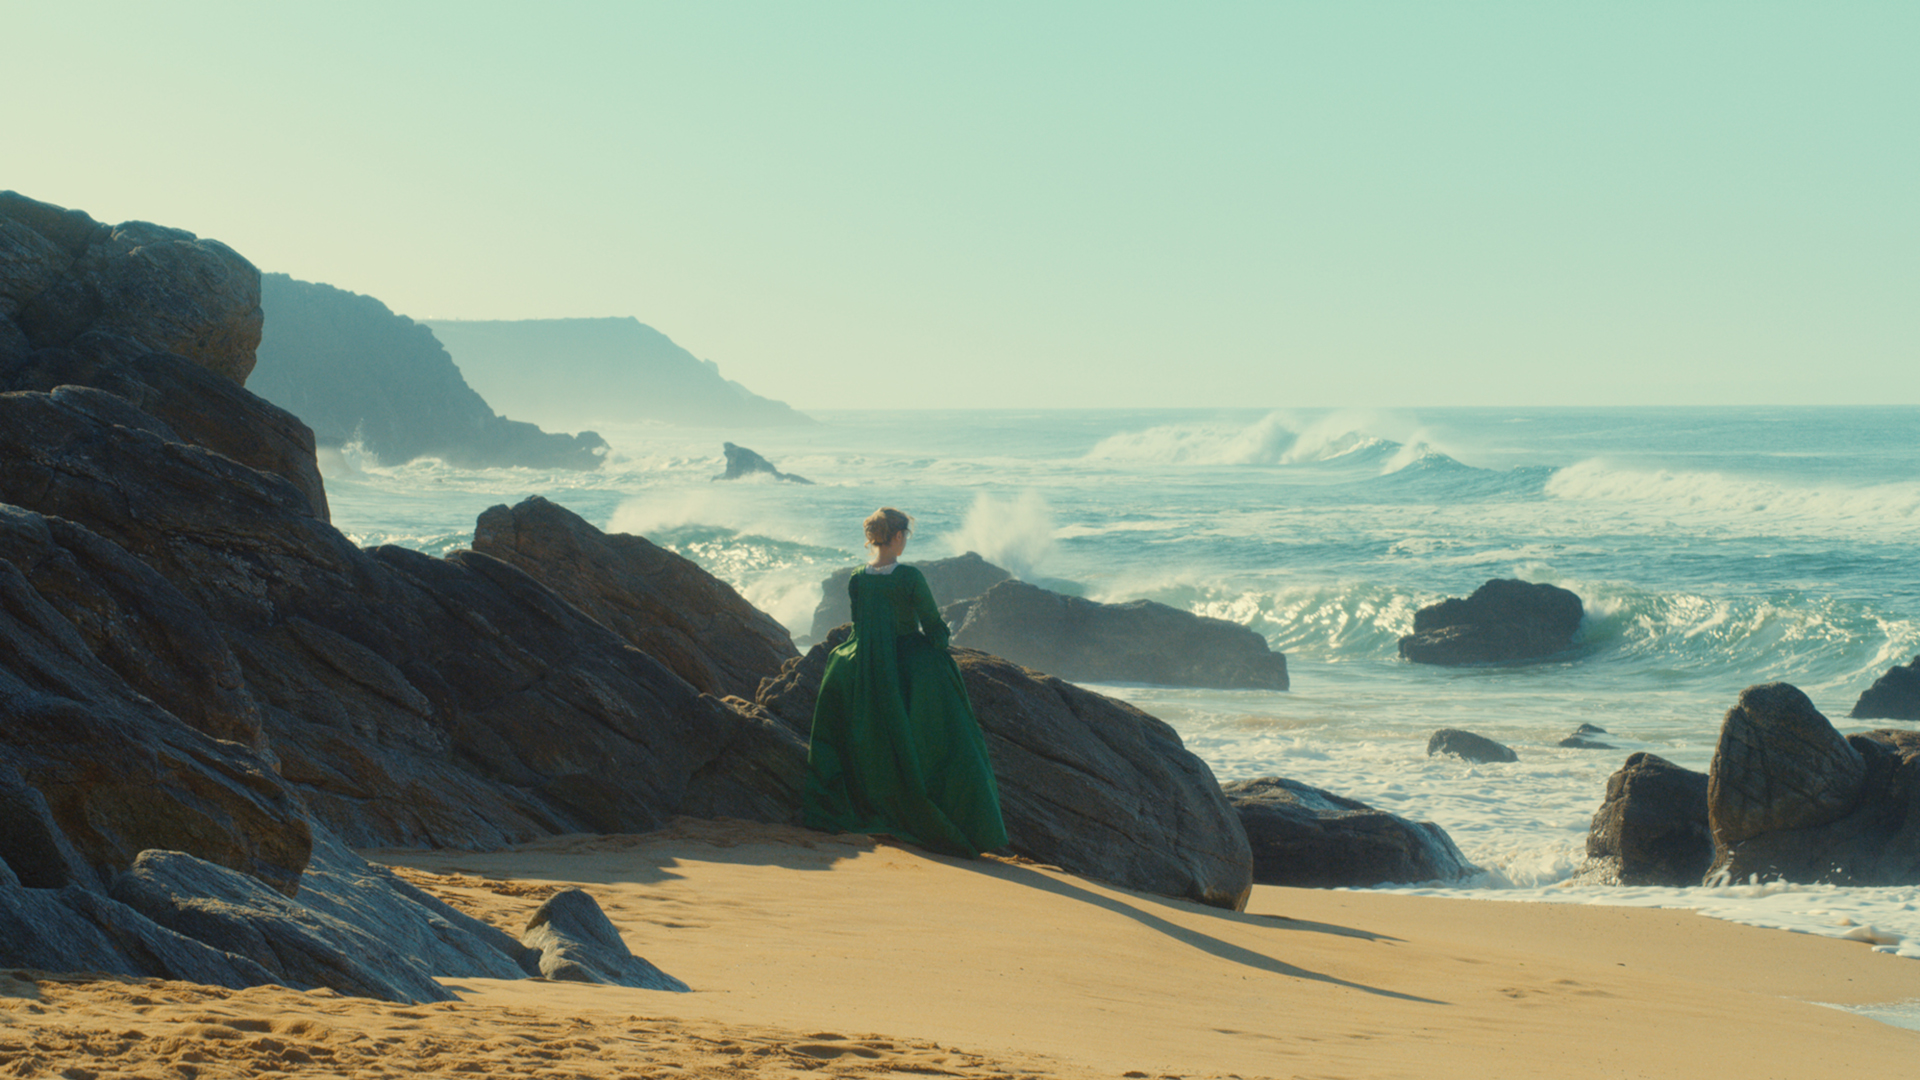 Filmstill Portrait einer jungen Frau in Flammen. Eine felsige Strandlandschaft und das Meer sind zu sehen. Eine junge Frau in grünem Kleid steht zwischen den Felsen.